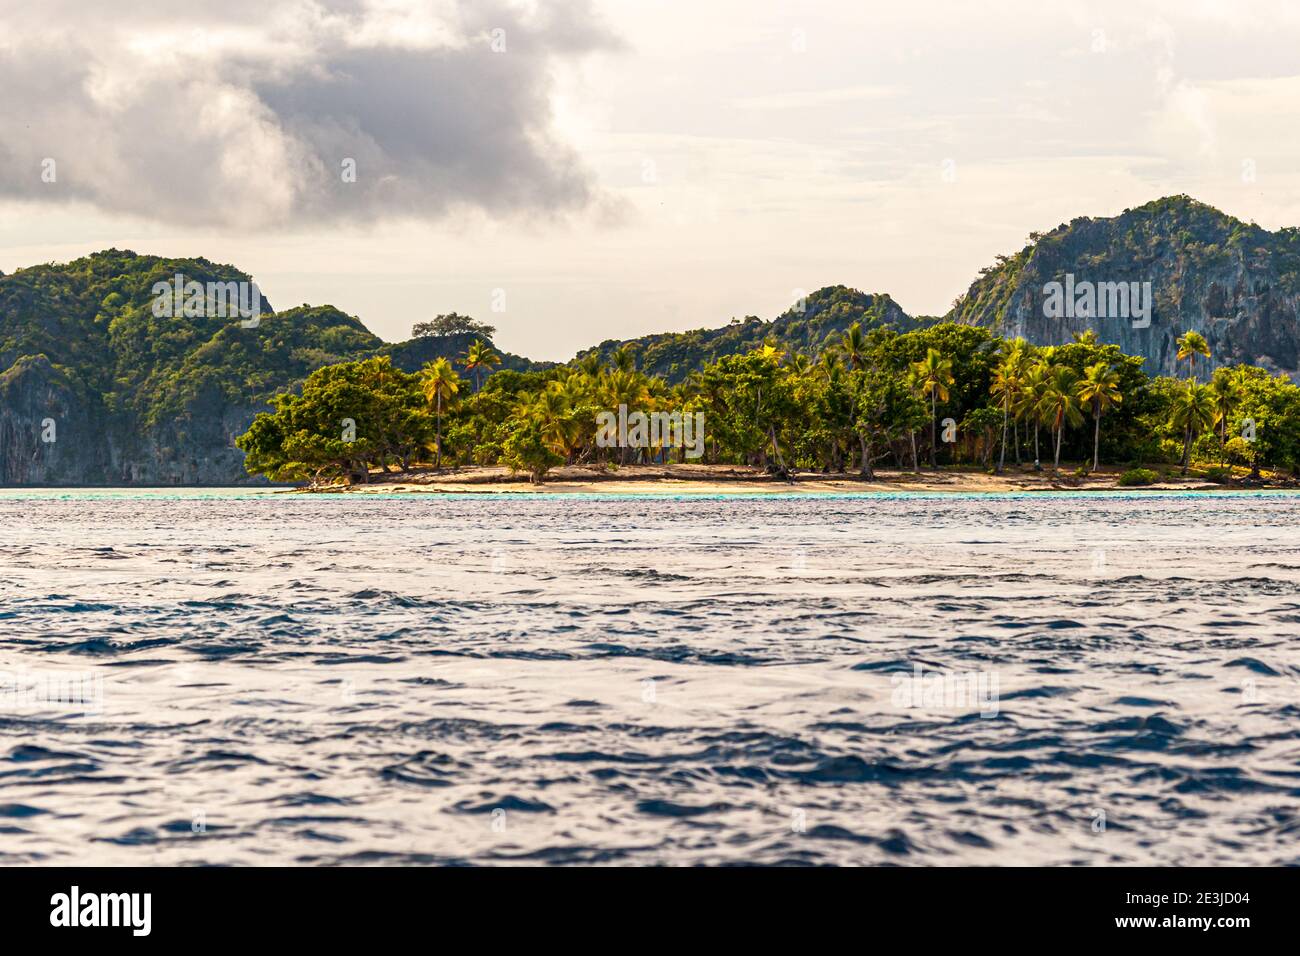 The coast of Papua New Guinea Stock Photo